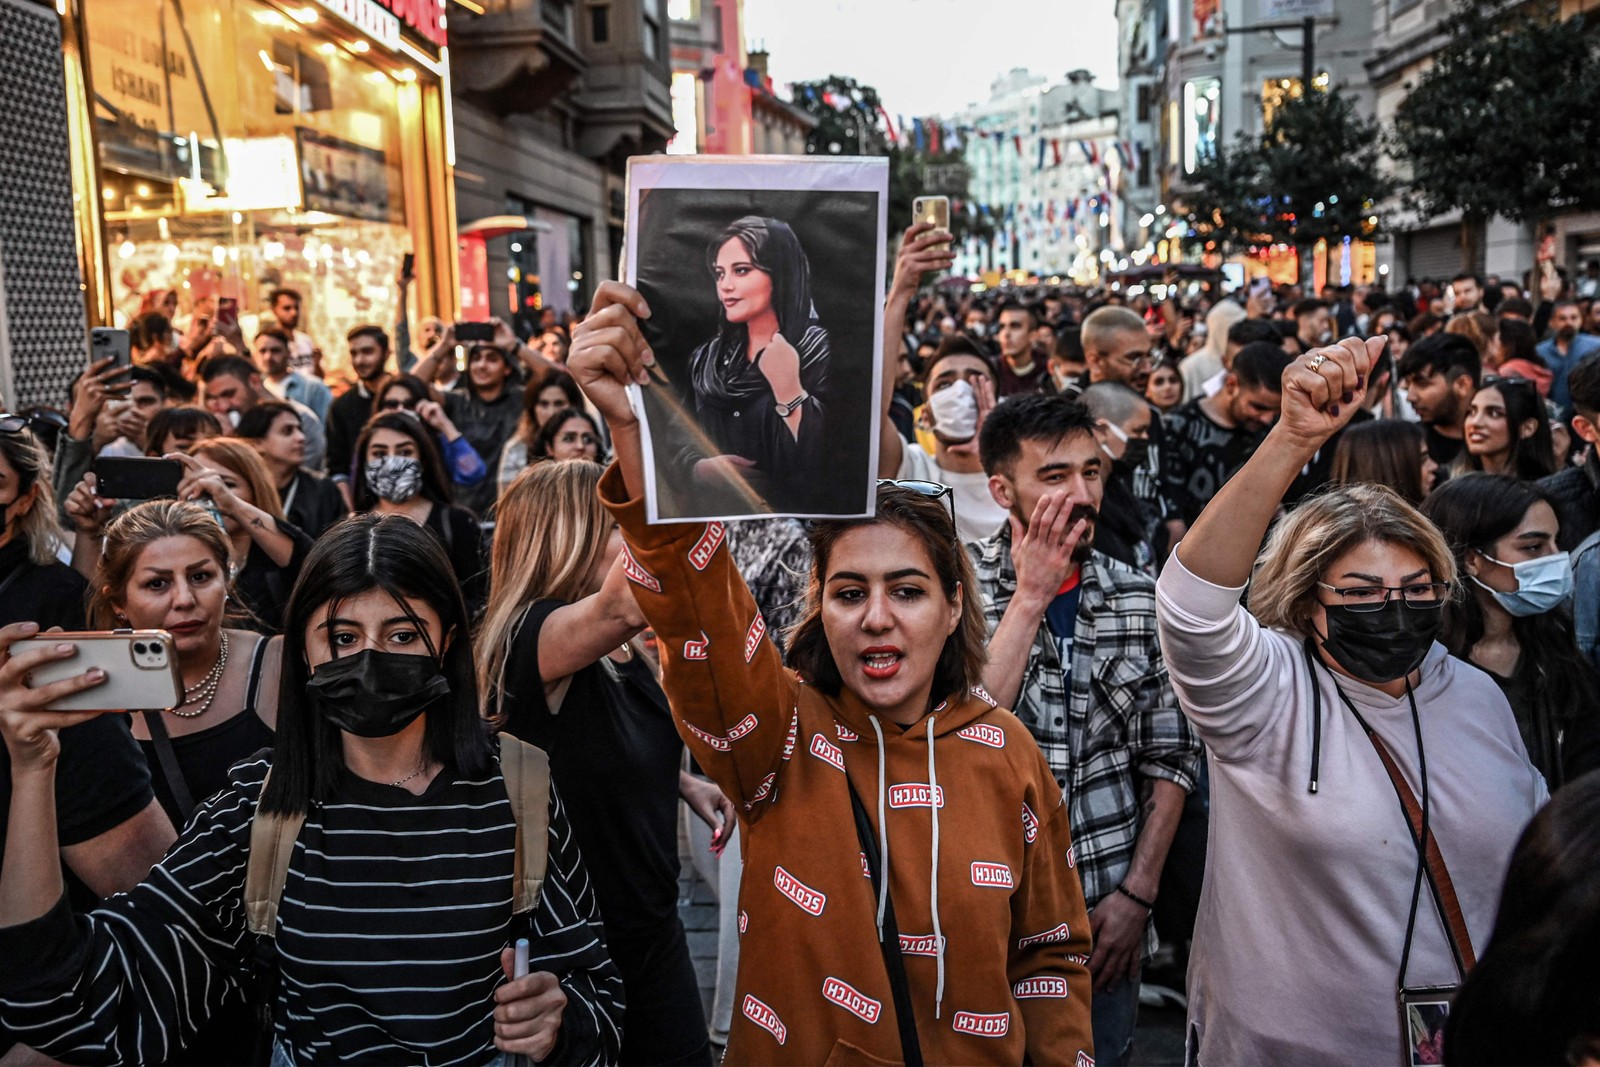 Manifestante marcha pela avenida Istiklal, em Istambul, enquanto segura um retrato de Mahsa Amini durante ato em apoio à jovem iraniana que morreu após ser presa em Teerã  — Foto: Ozan KOSE / AFP